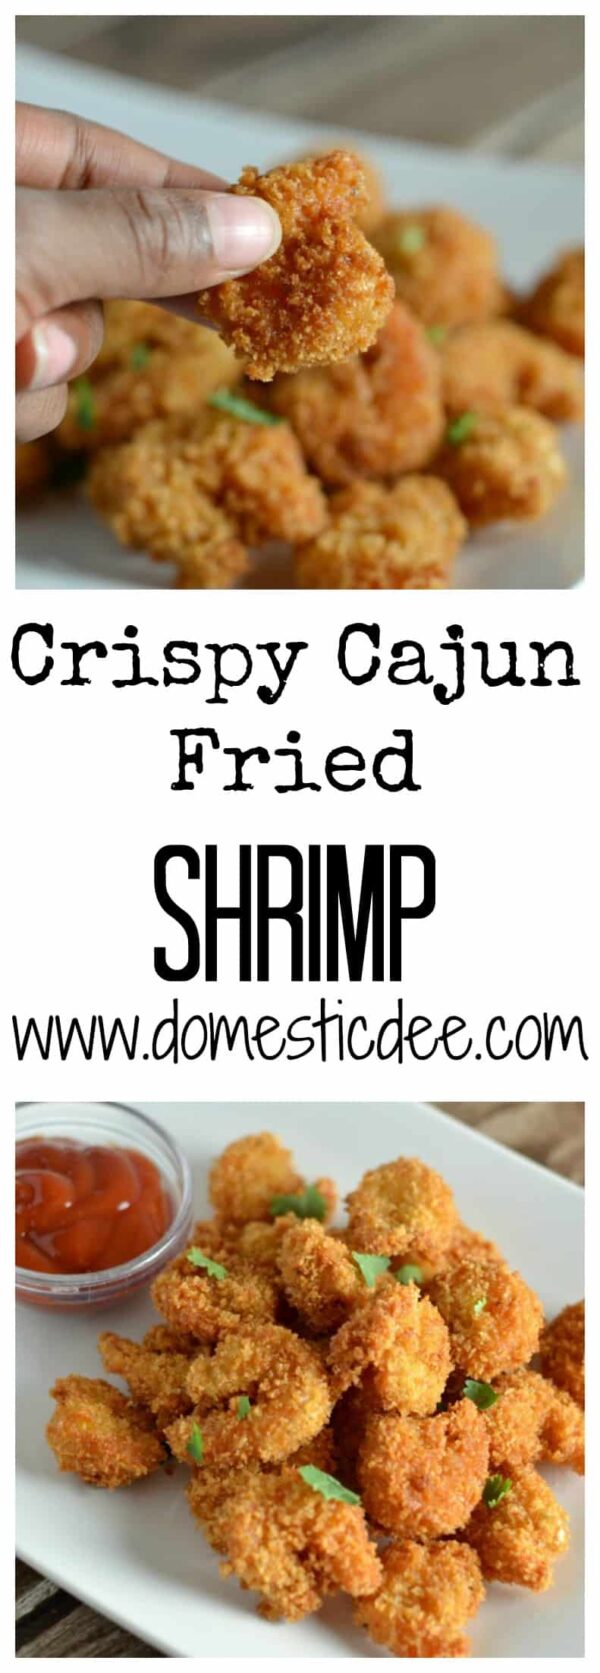 Crispy Cajun Fried Shrimp - Domestic Dee